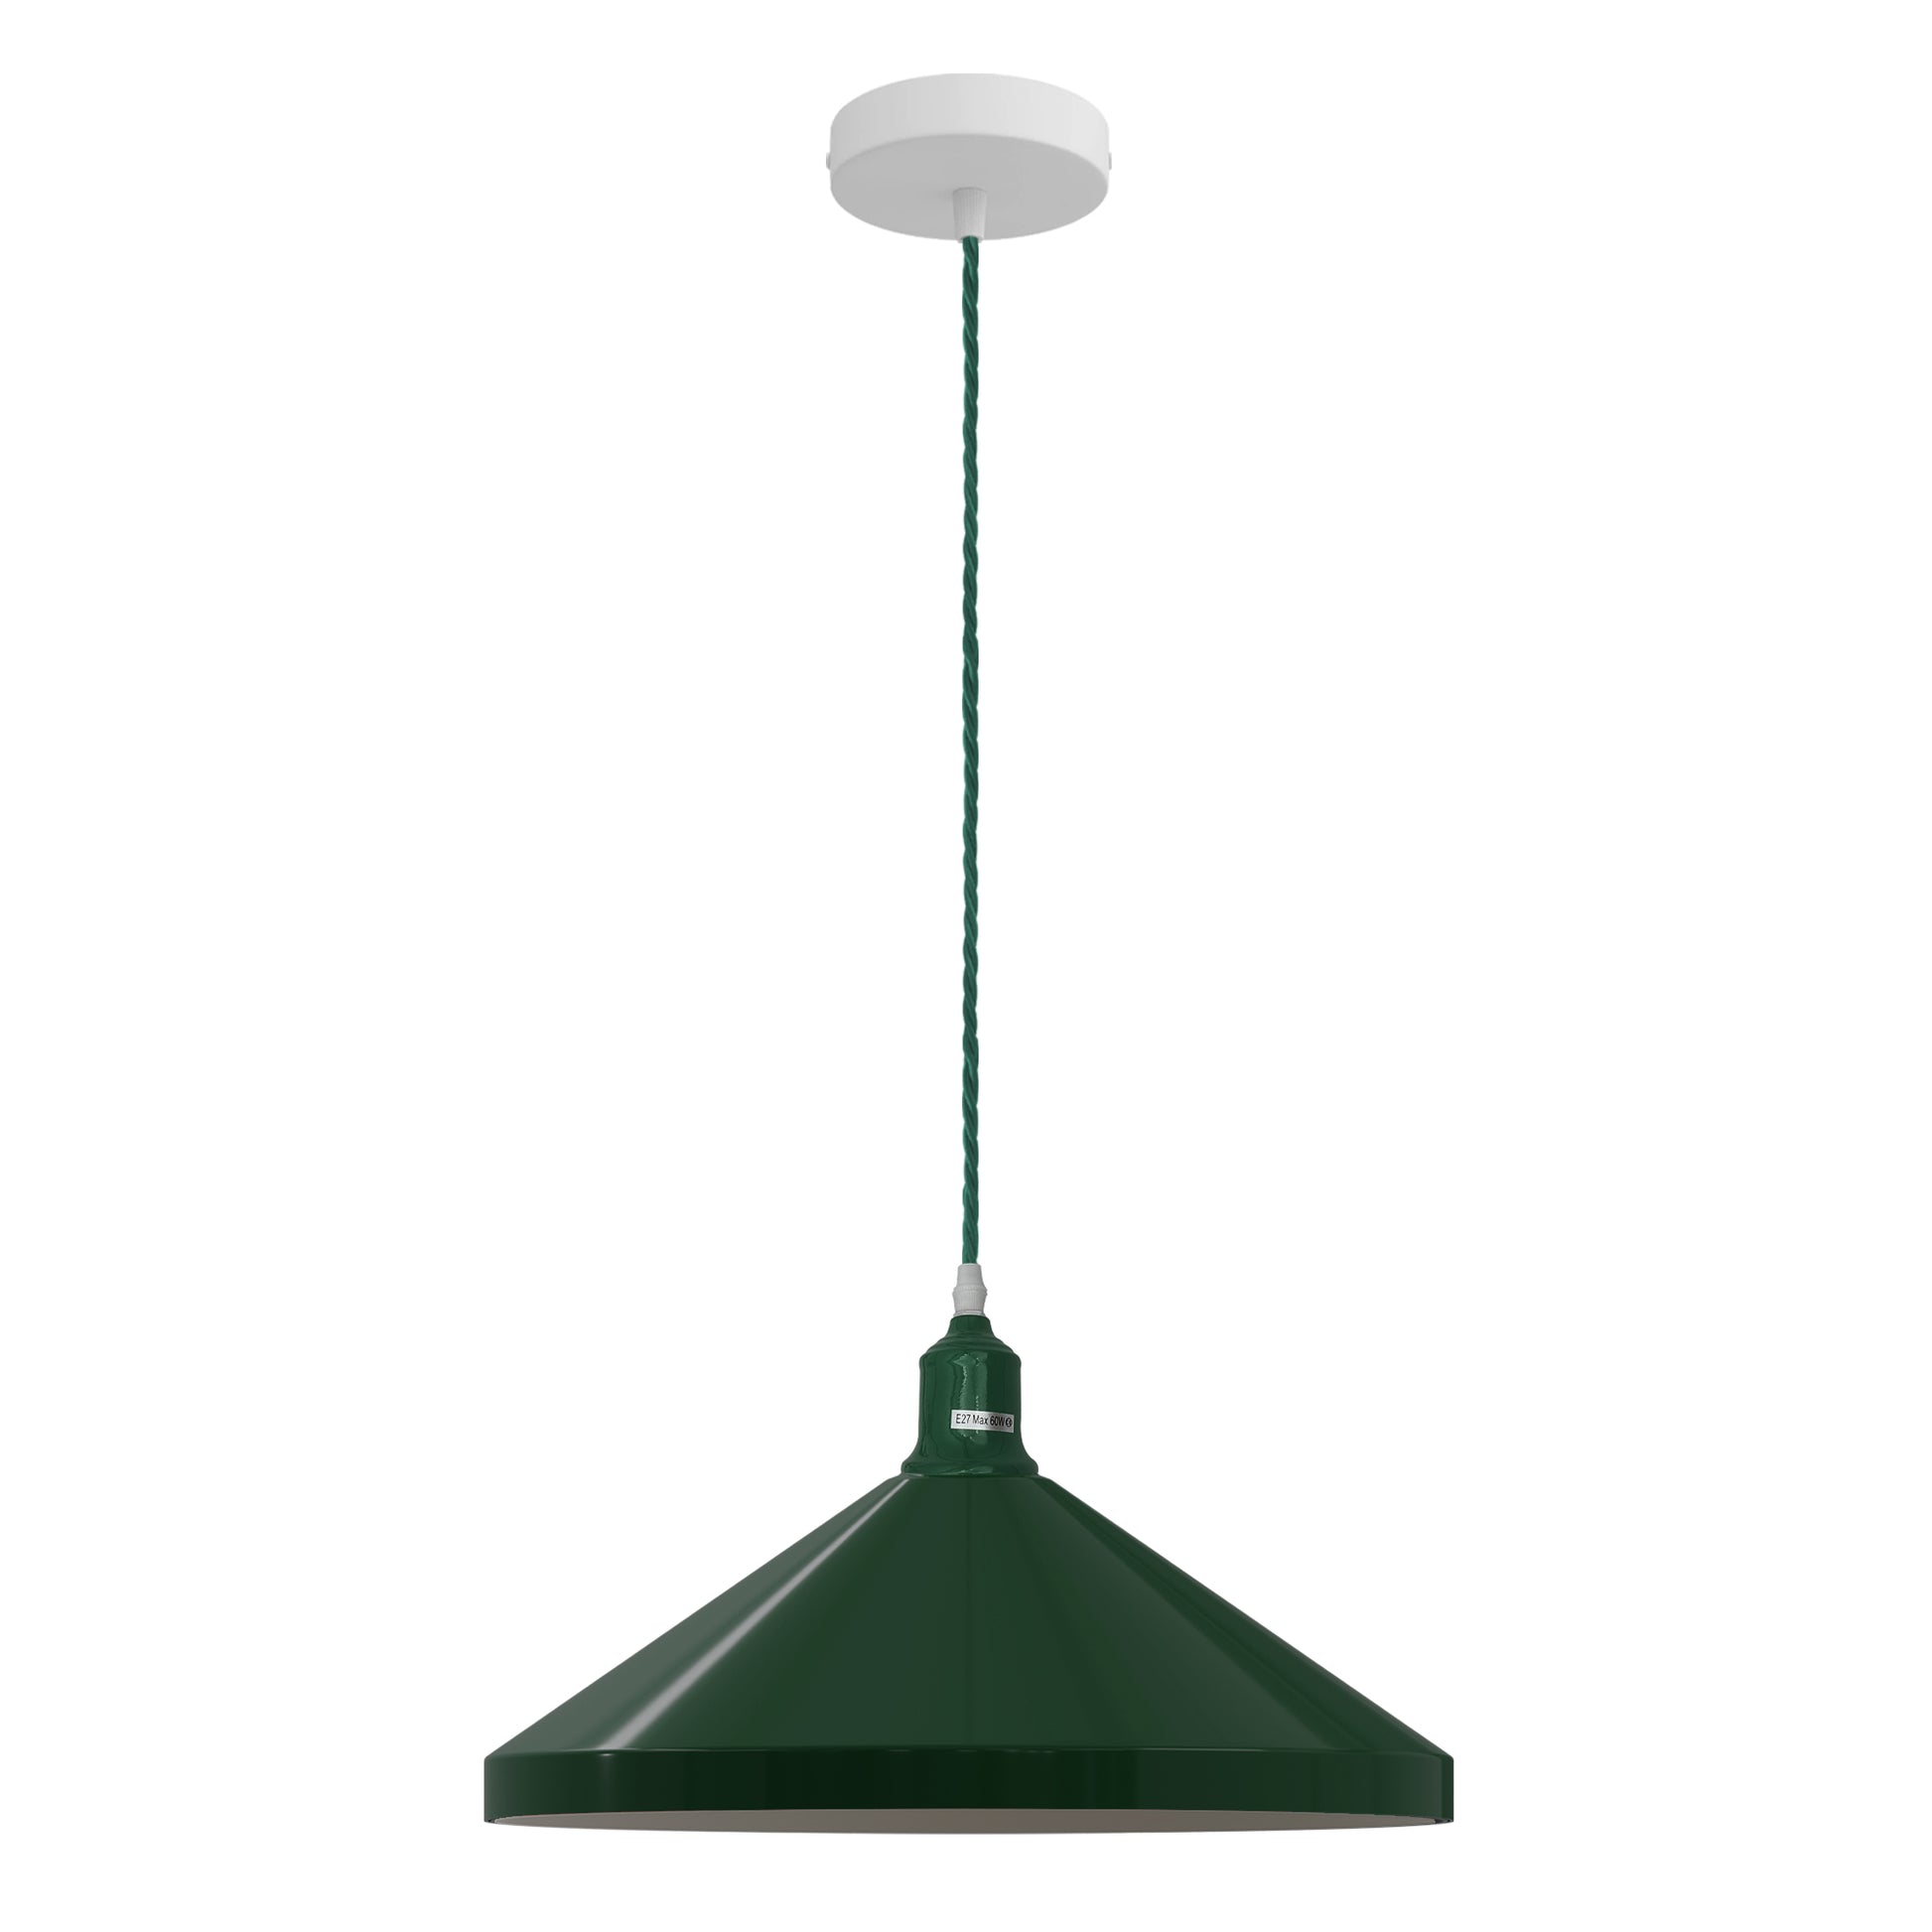 Green Ceiling Pendant Light Adjustable Lamp Ceiling Light